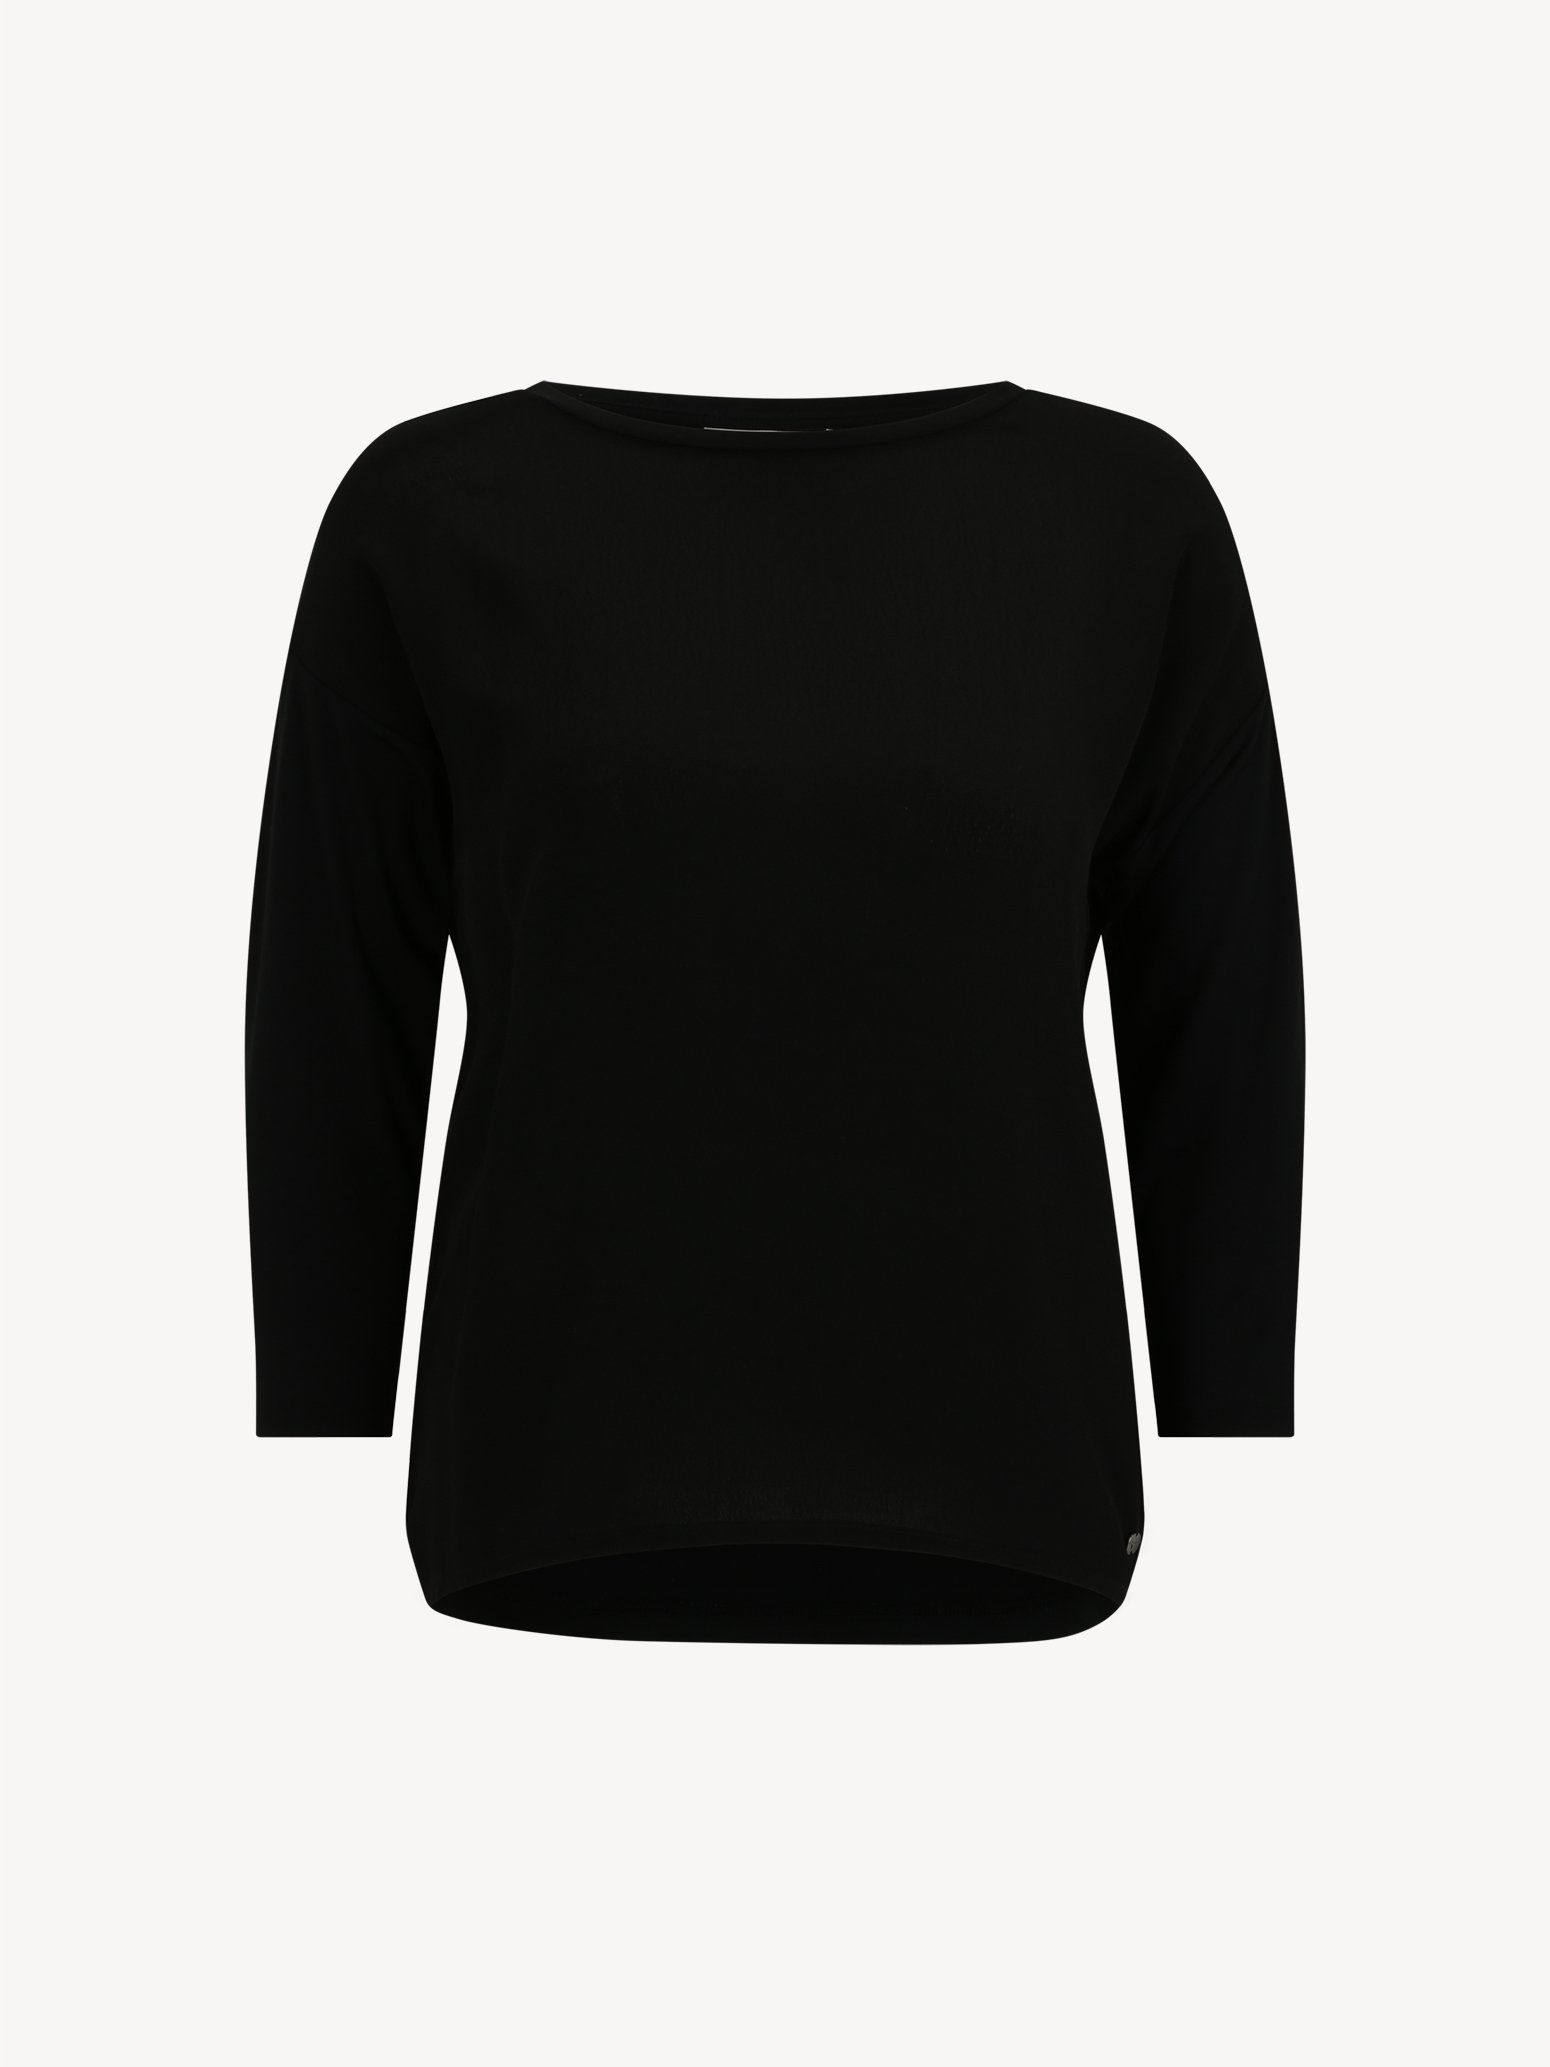 Langarmshirt/Longsleeve - schwarz TAW0372-80009: Tamaris online & Tops kaufen! Shirts